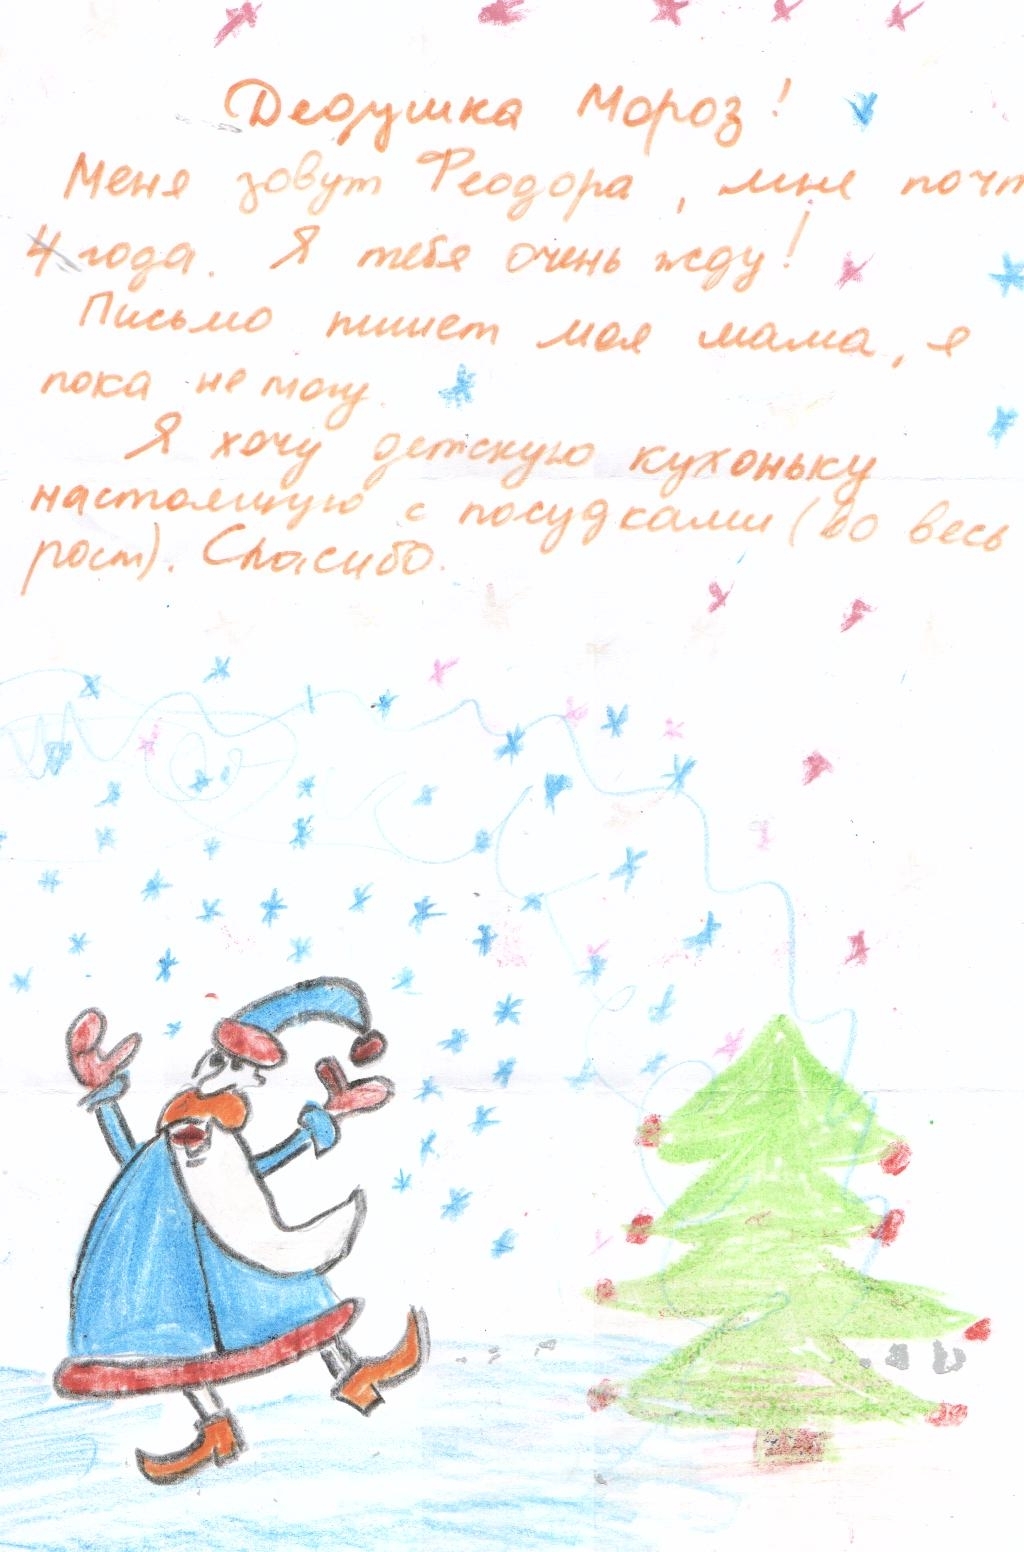 Как написать письмо Деду Морозу вместе с ребенком (и скачать бланки новогодних писем)